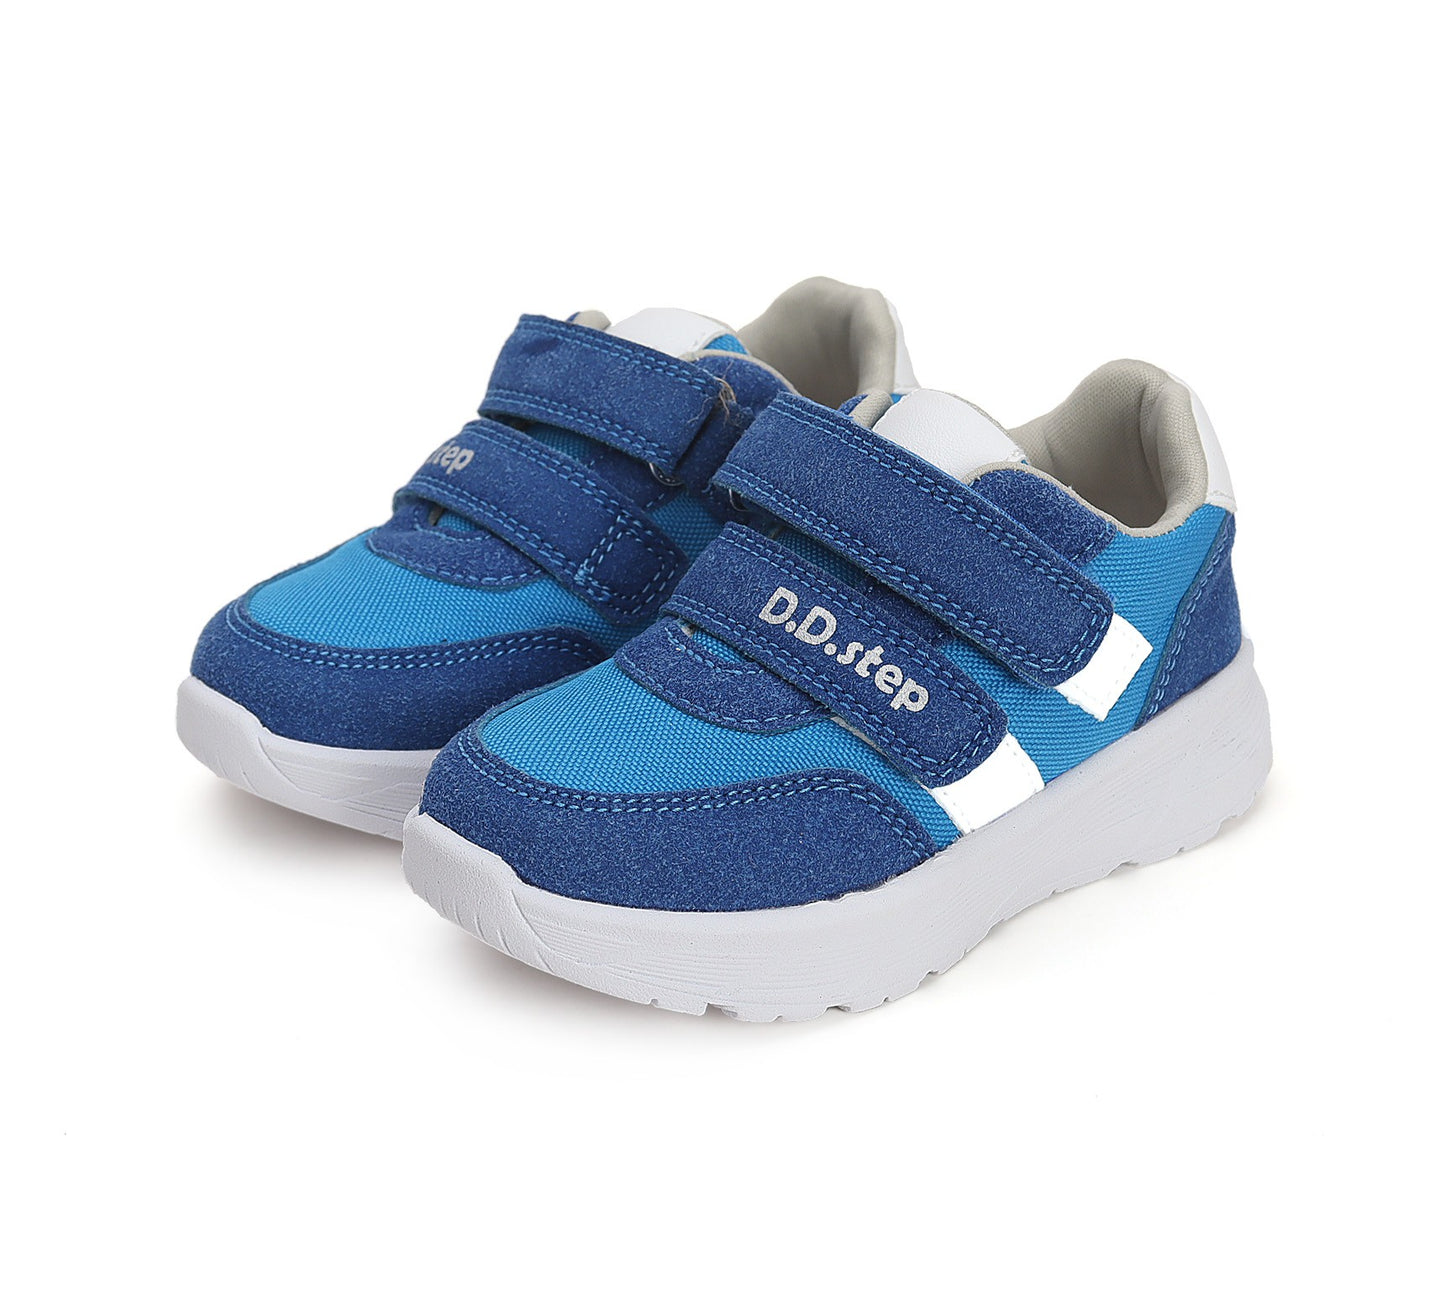 Mėlyni sportiniai batai 26-31 d. F083-41879AM